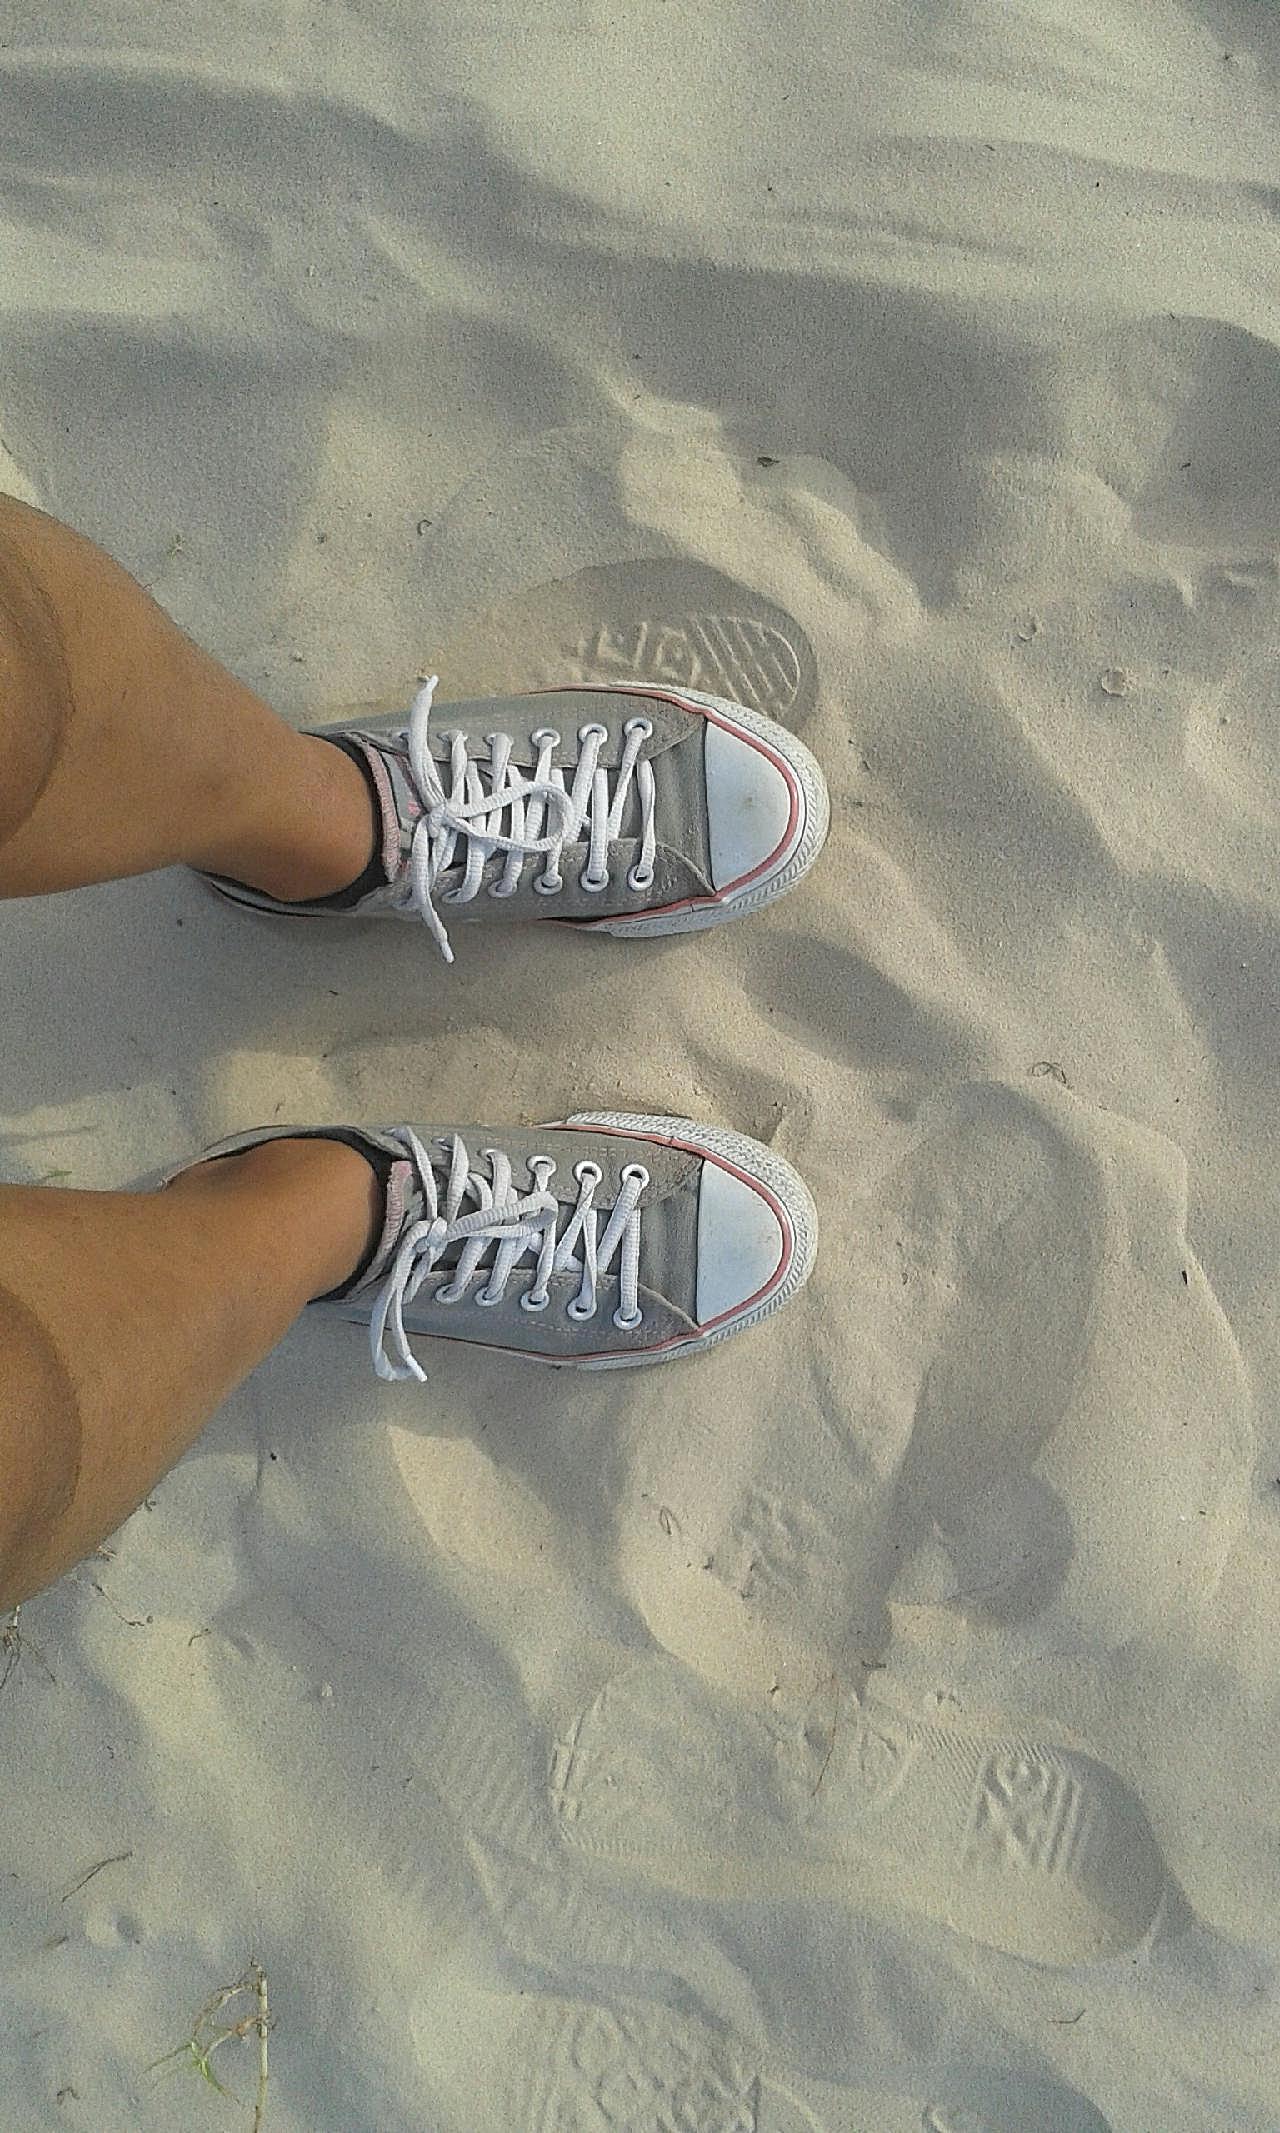 踩在沙滩上的双脚图片高清